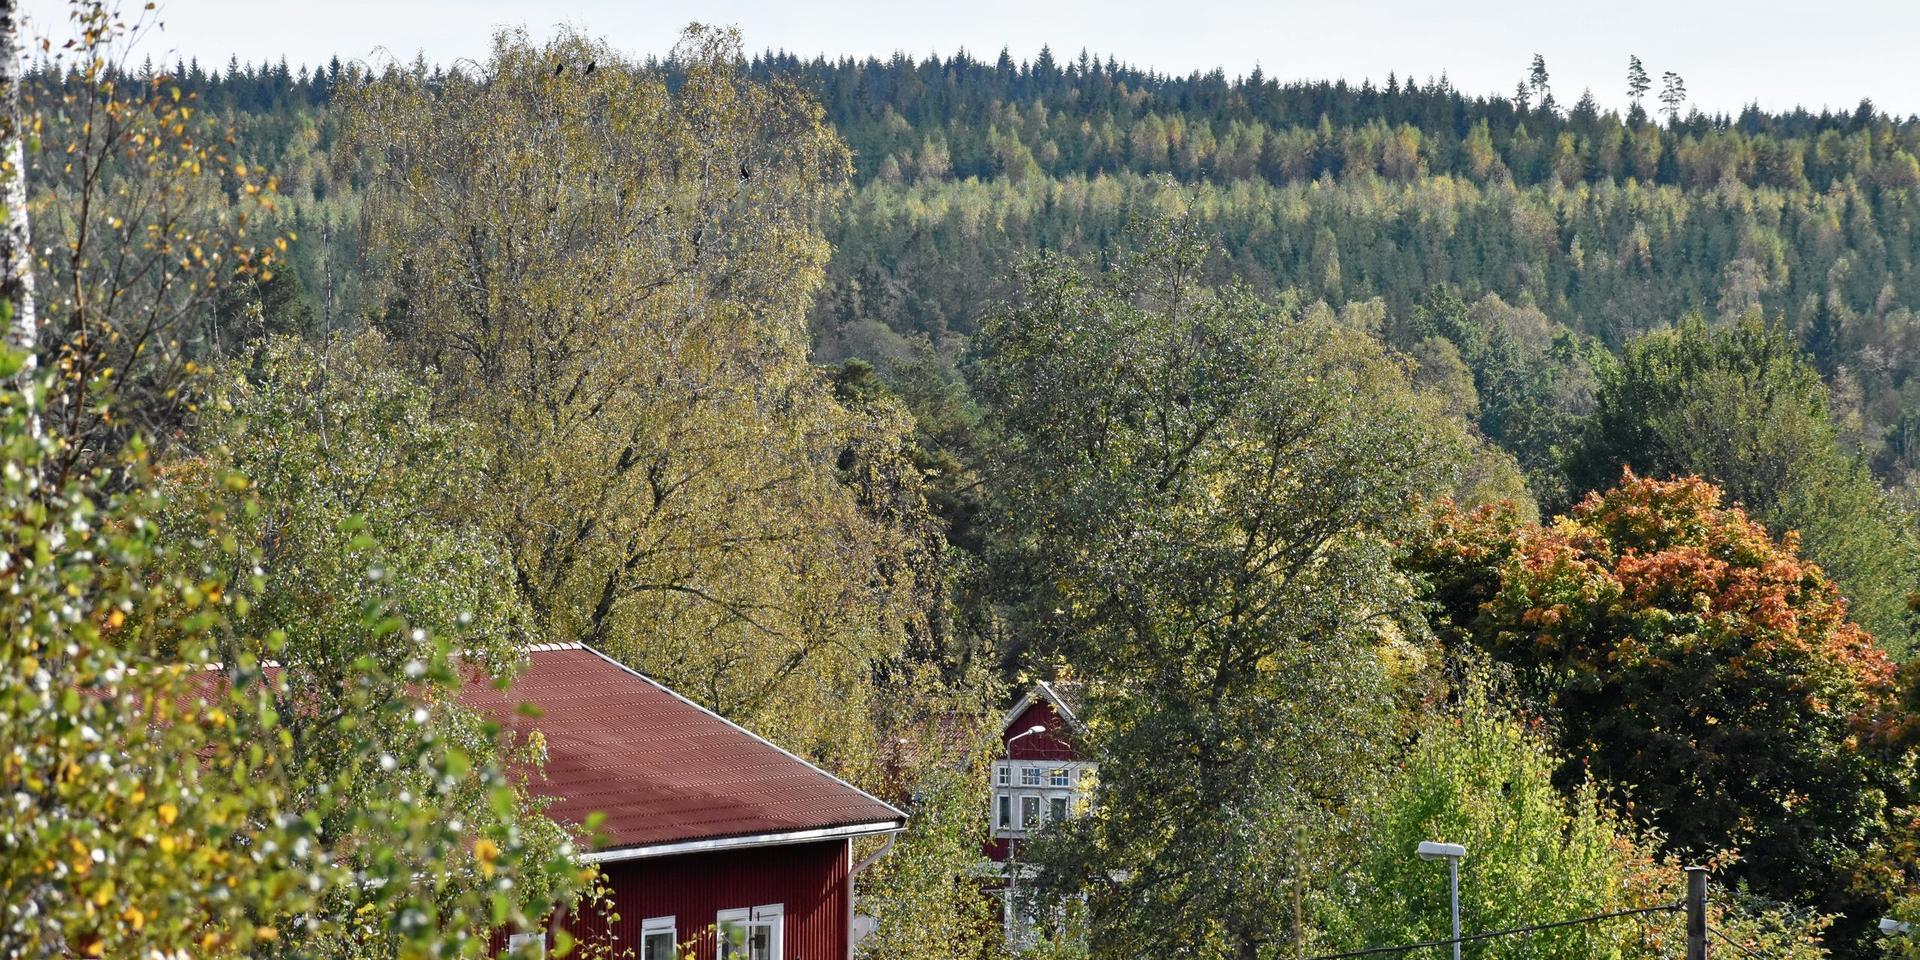 Tusentals hektar, på båda sidorna av Nissadalen i Rydöbruk, ingår i det skogsinnehavs som Stora Enso inte längre räknar till sin ”kärnverksamhet” och som därför nu säljs via mäklare.